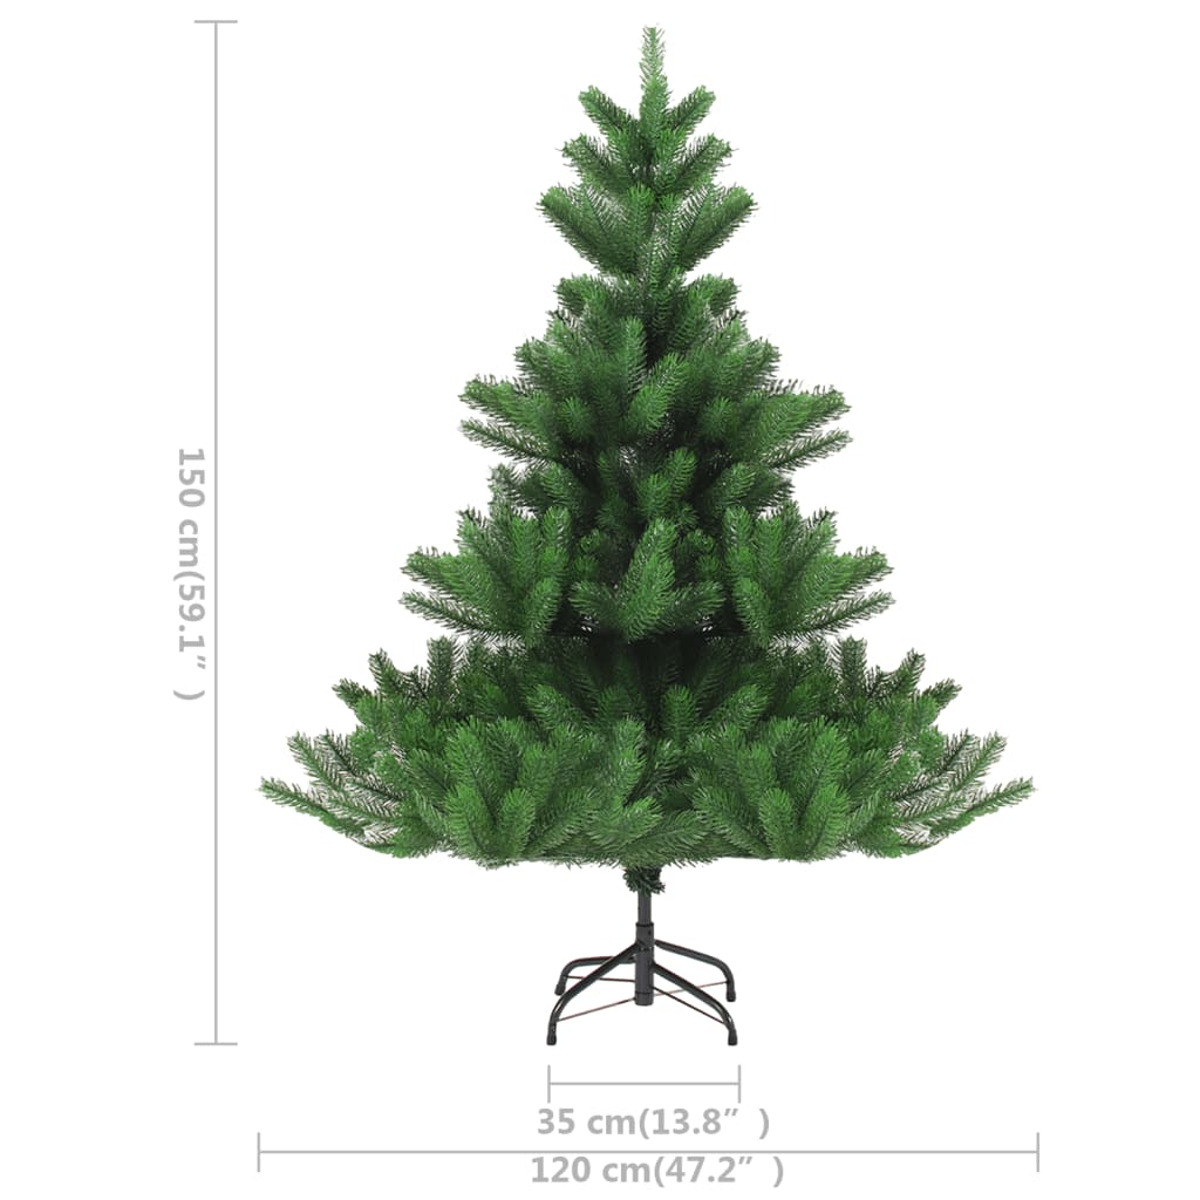 VIDAXL 3077559 Weihnachtsbaum